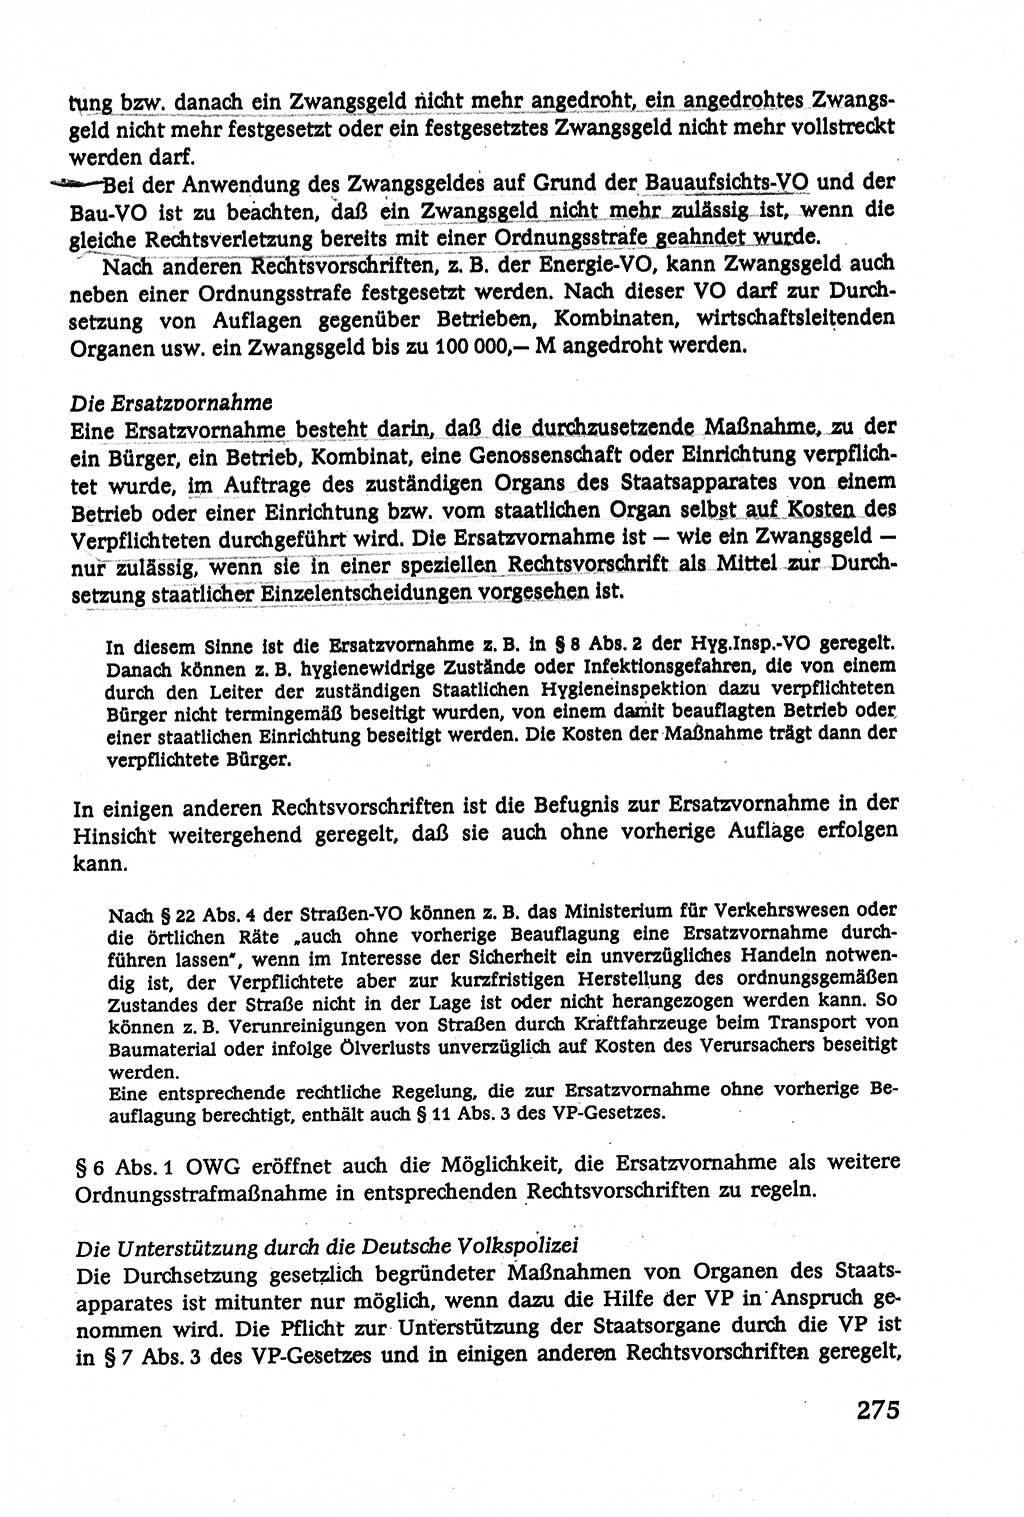 Verwaltungsrecht [Deutsche Demokratische Republik (DDR)], Lehrbuch 1979, Seite 275 (Verw.-R. DDR Lb. 1979, S. 275)